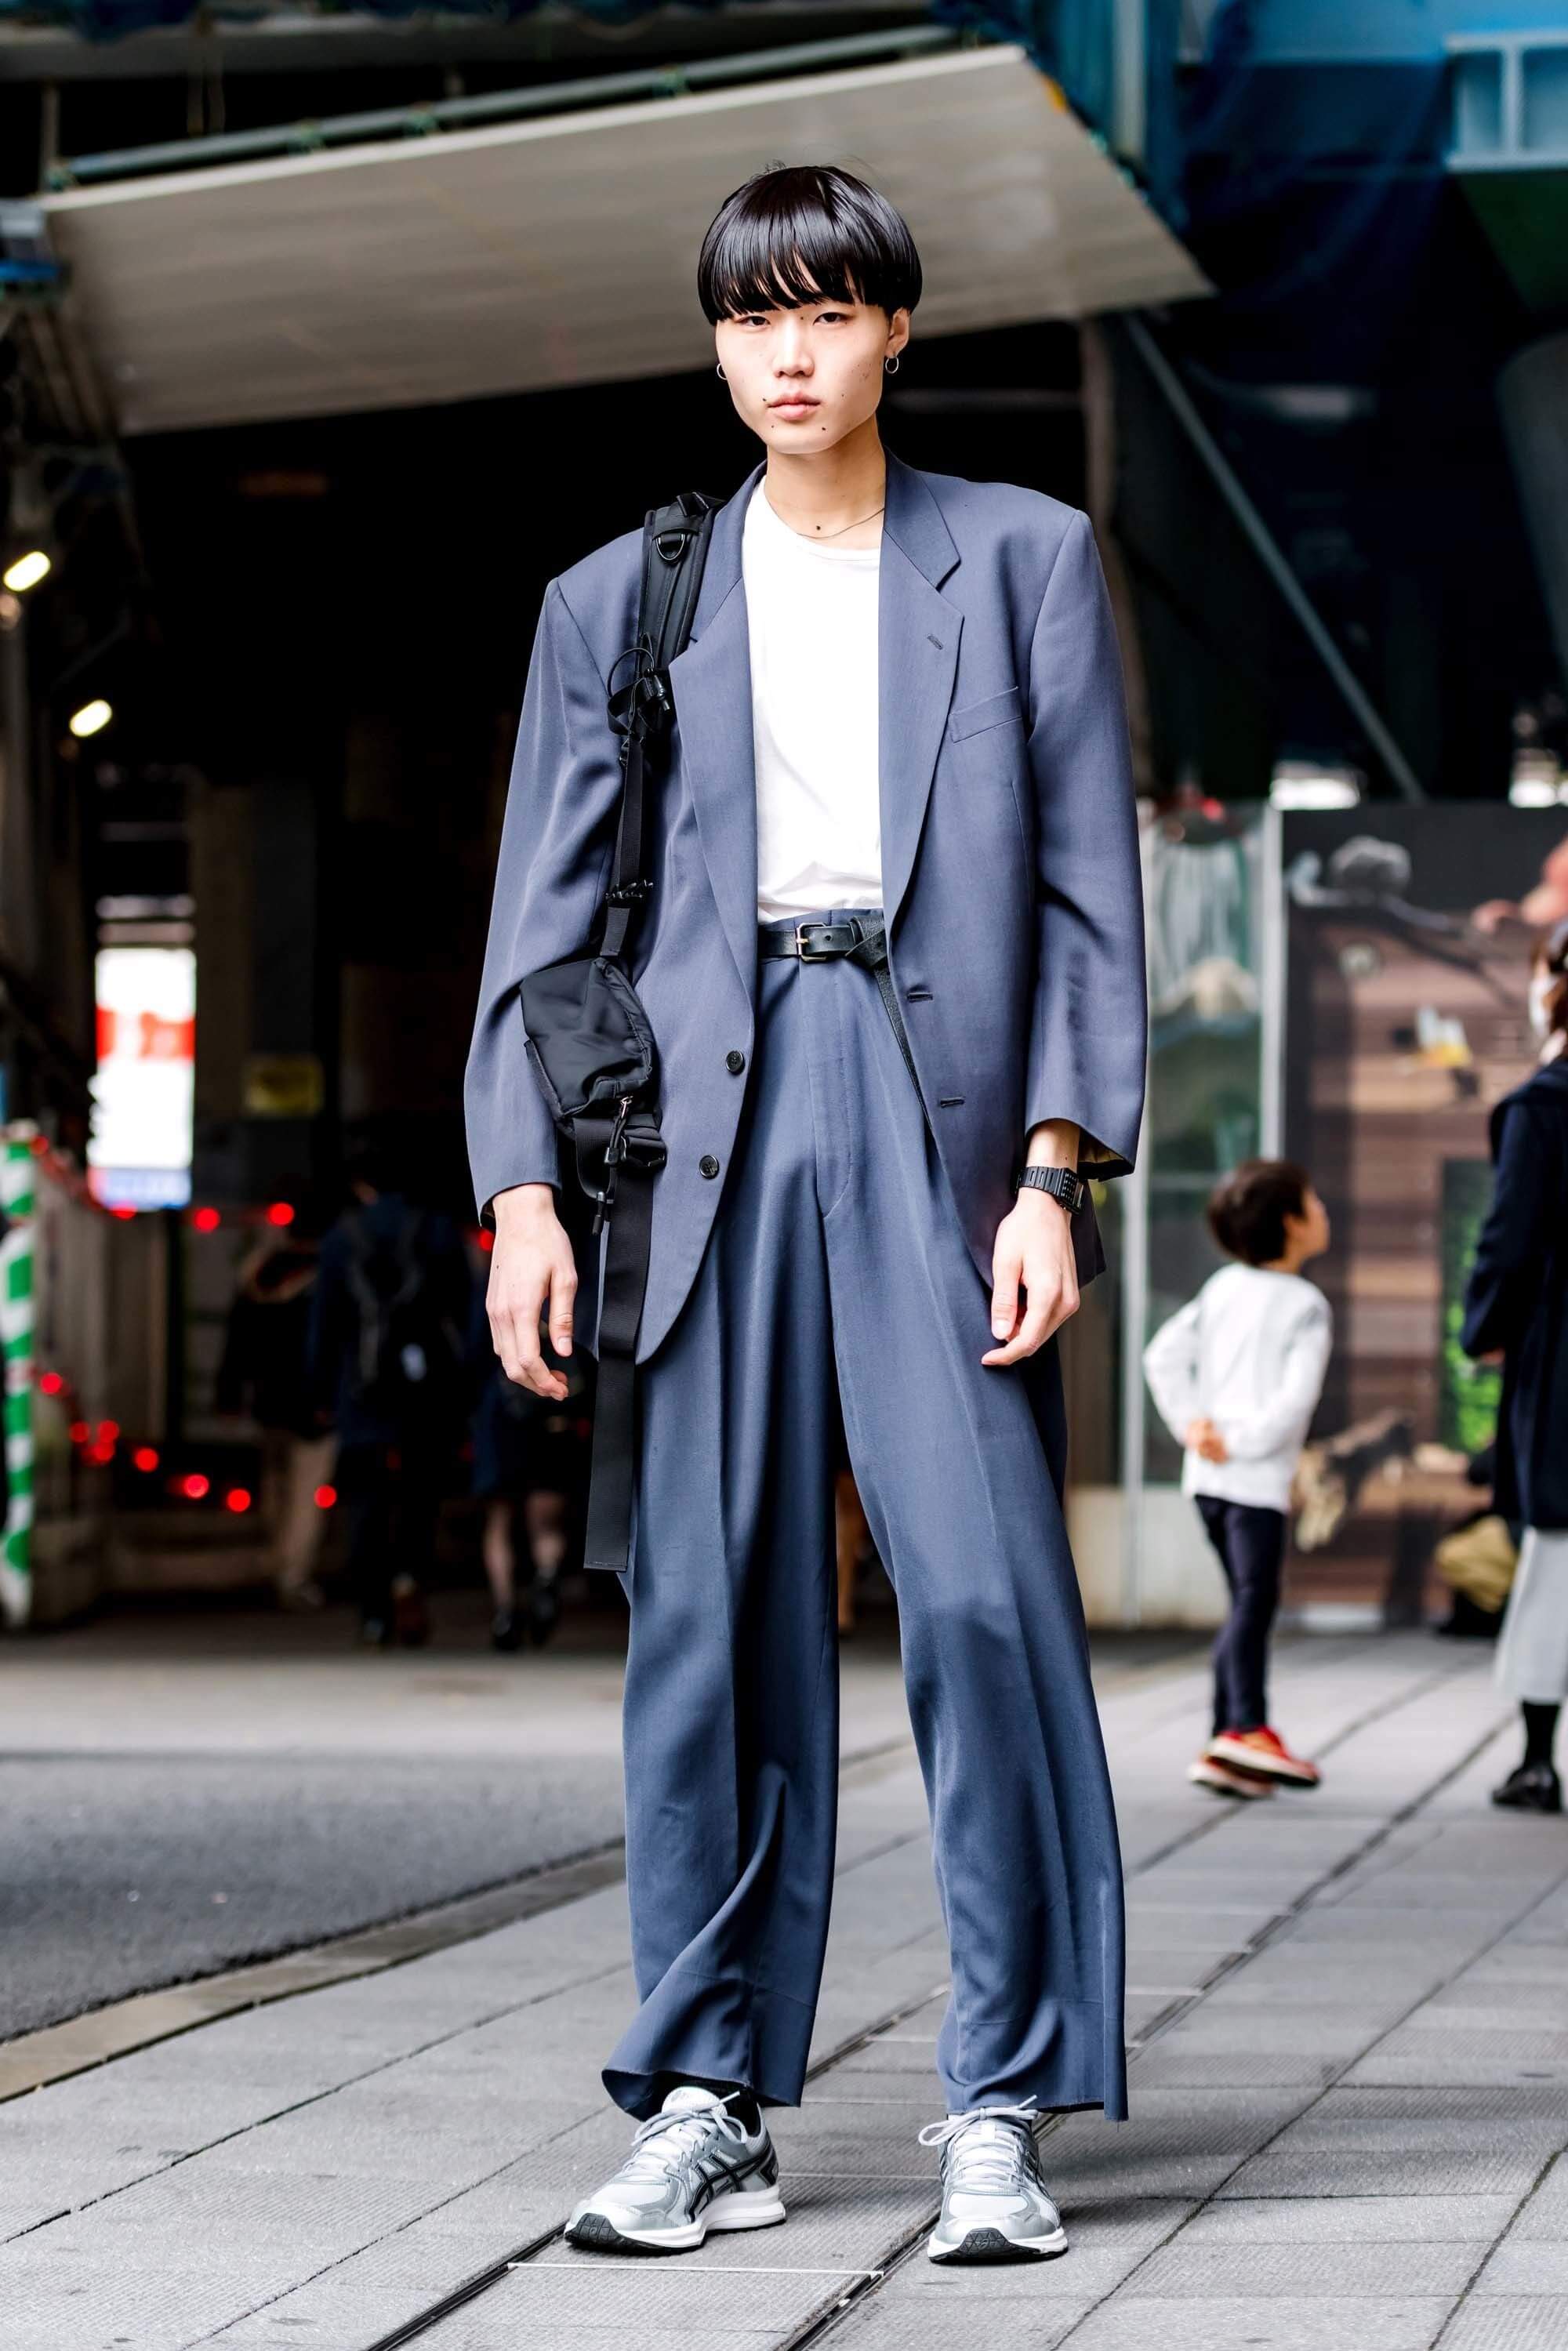 Tokyo fashion week of 2019